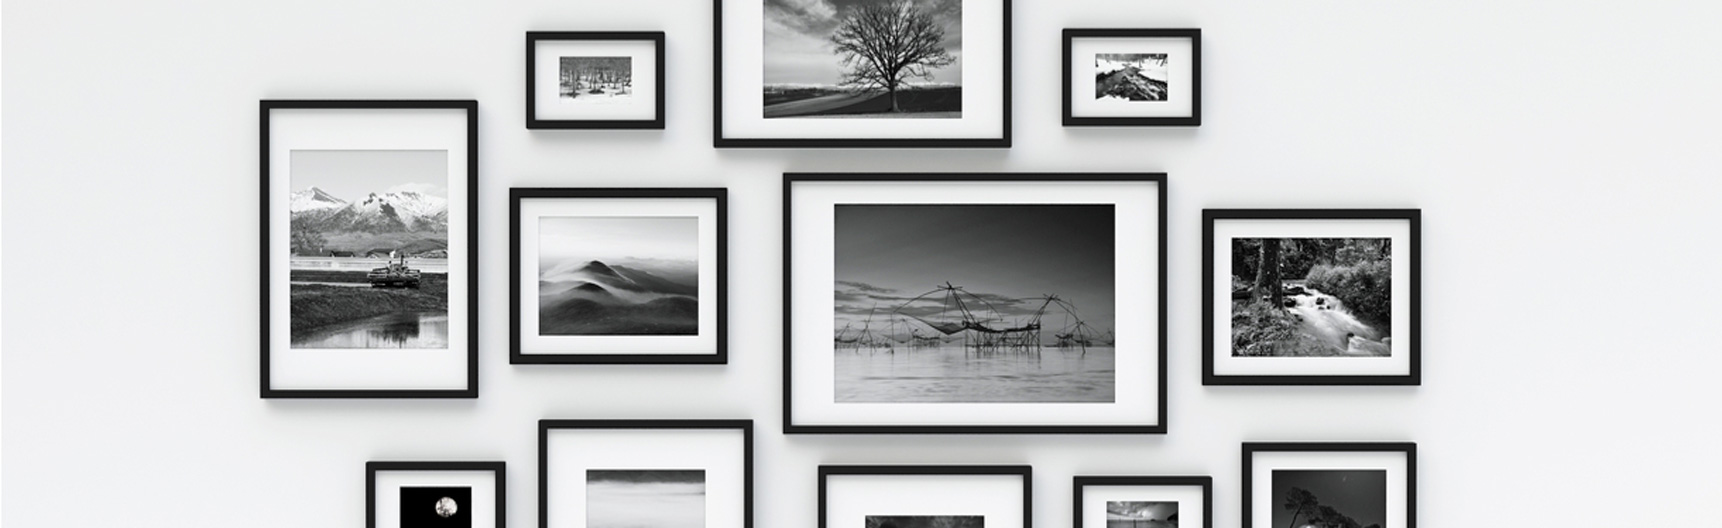 Photographie en noir et blanc de cadres photo en bois noir de différents formats portrait et paysage qui sont accrochés à un mur